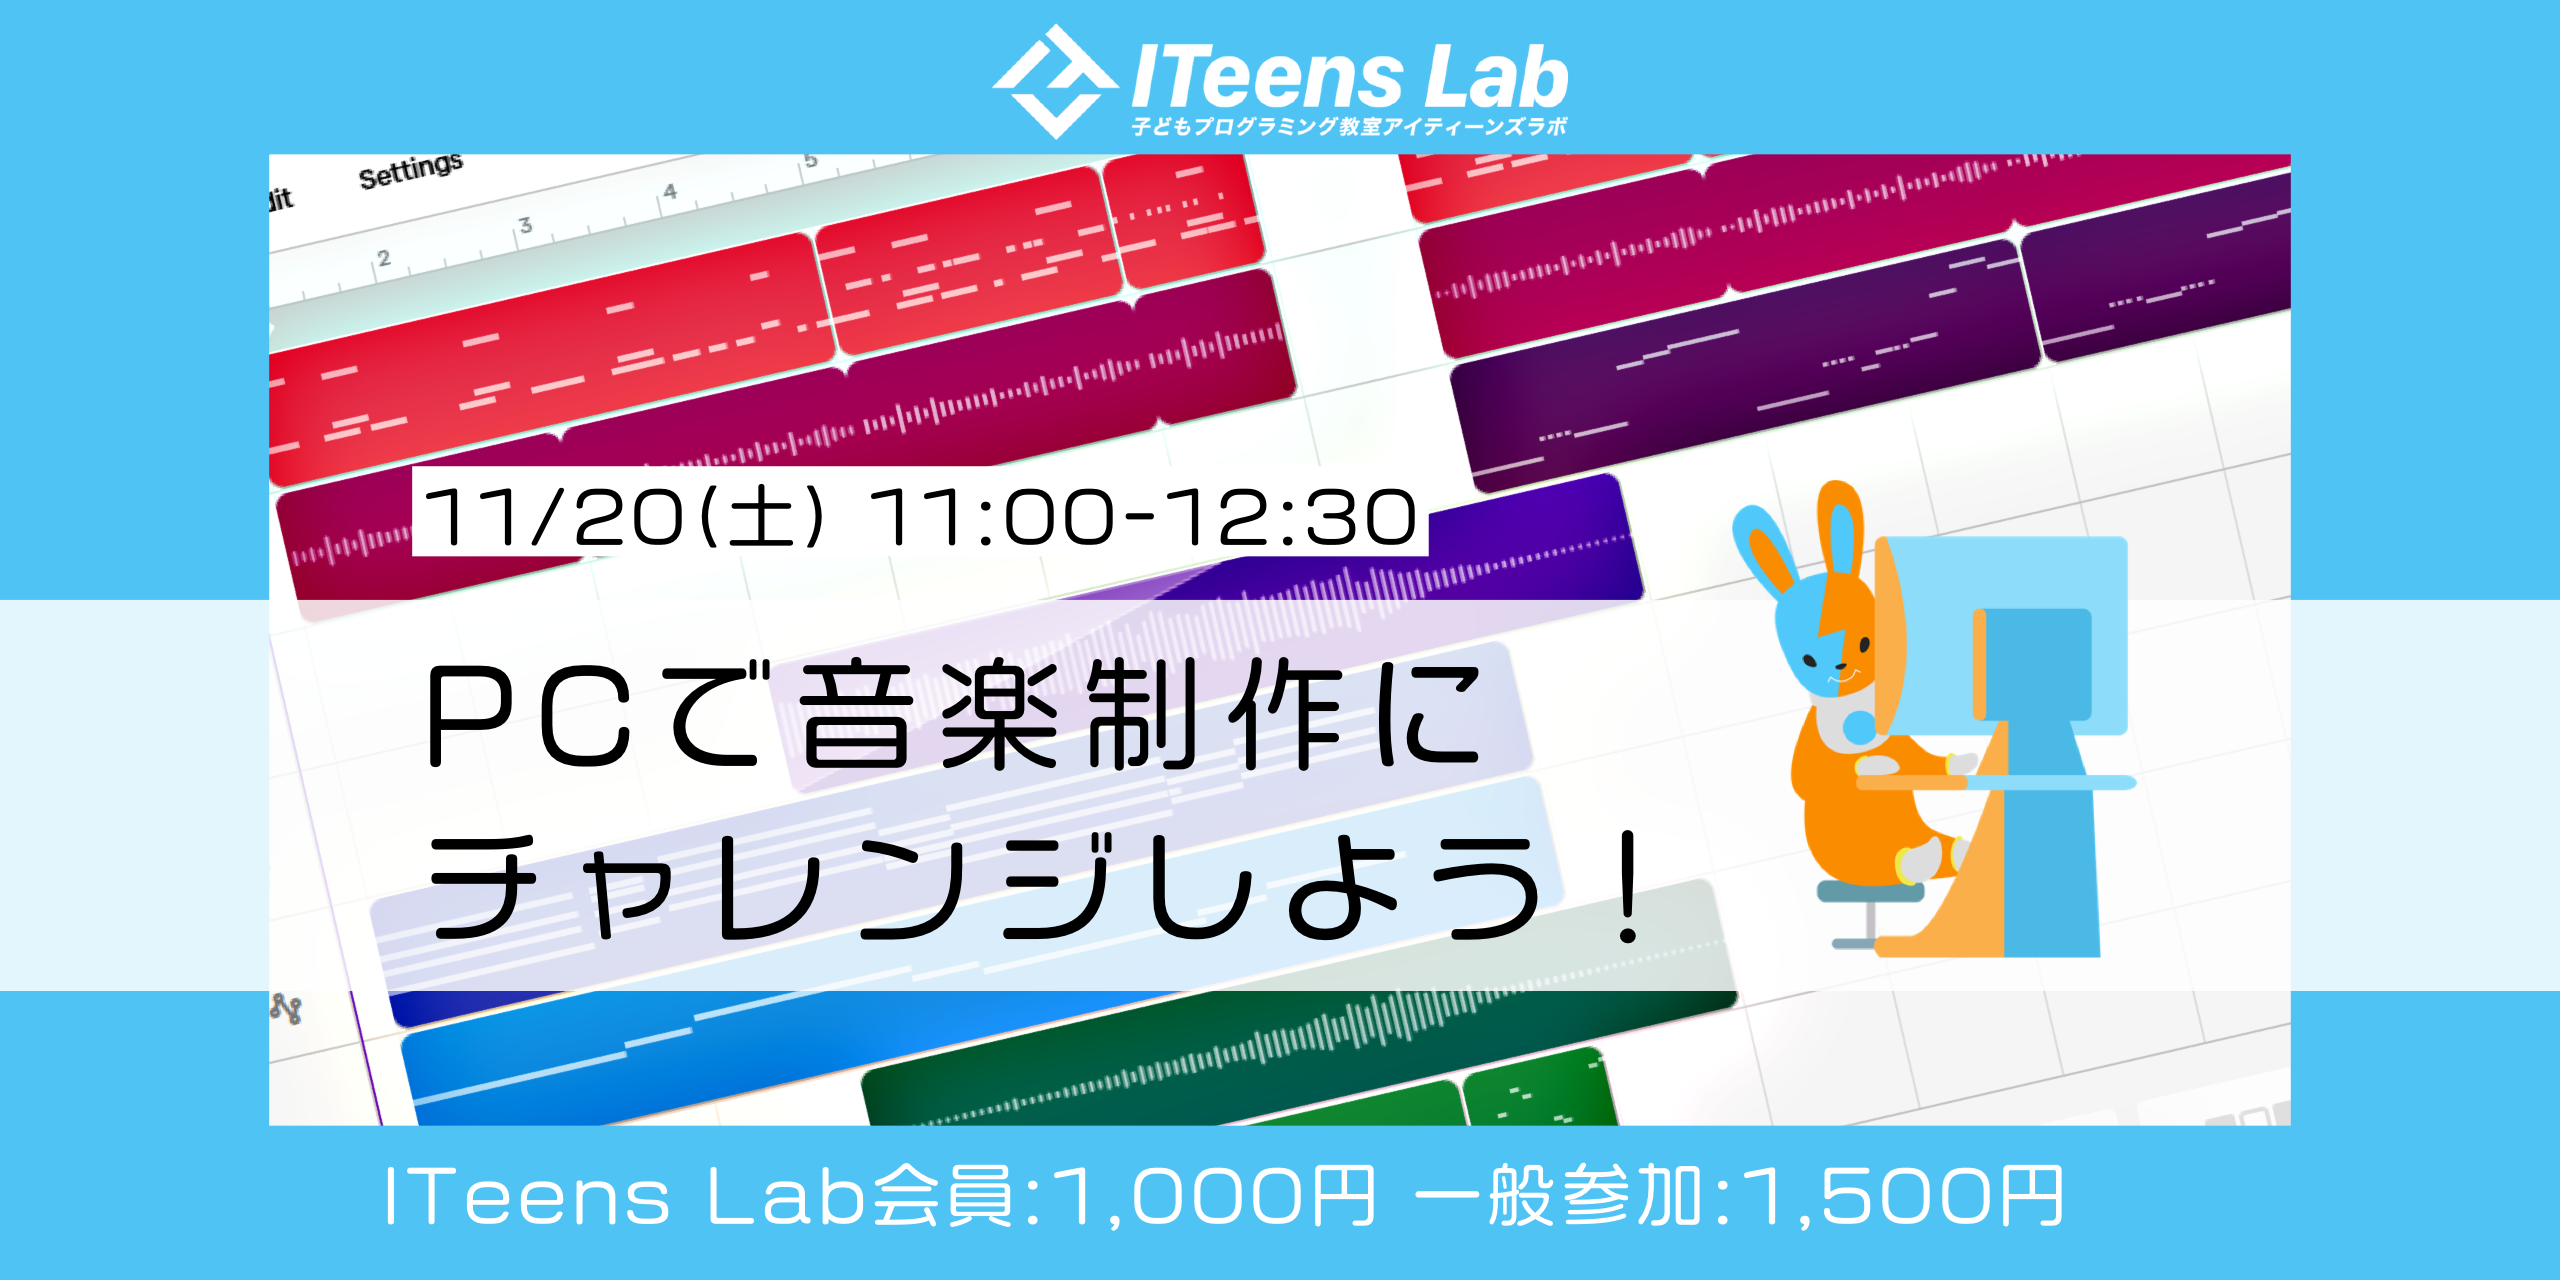 【11/20(土)開催】オンライン子どもプログラミング教室ITeens Labはパソコンを使った音楽制作(DTM)が学べるイベントを開催します